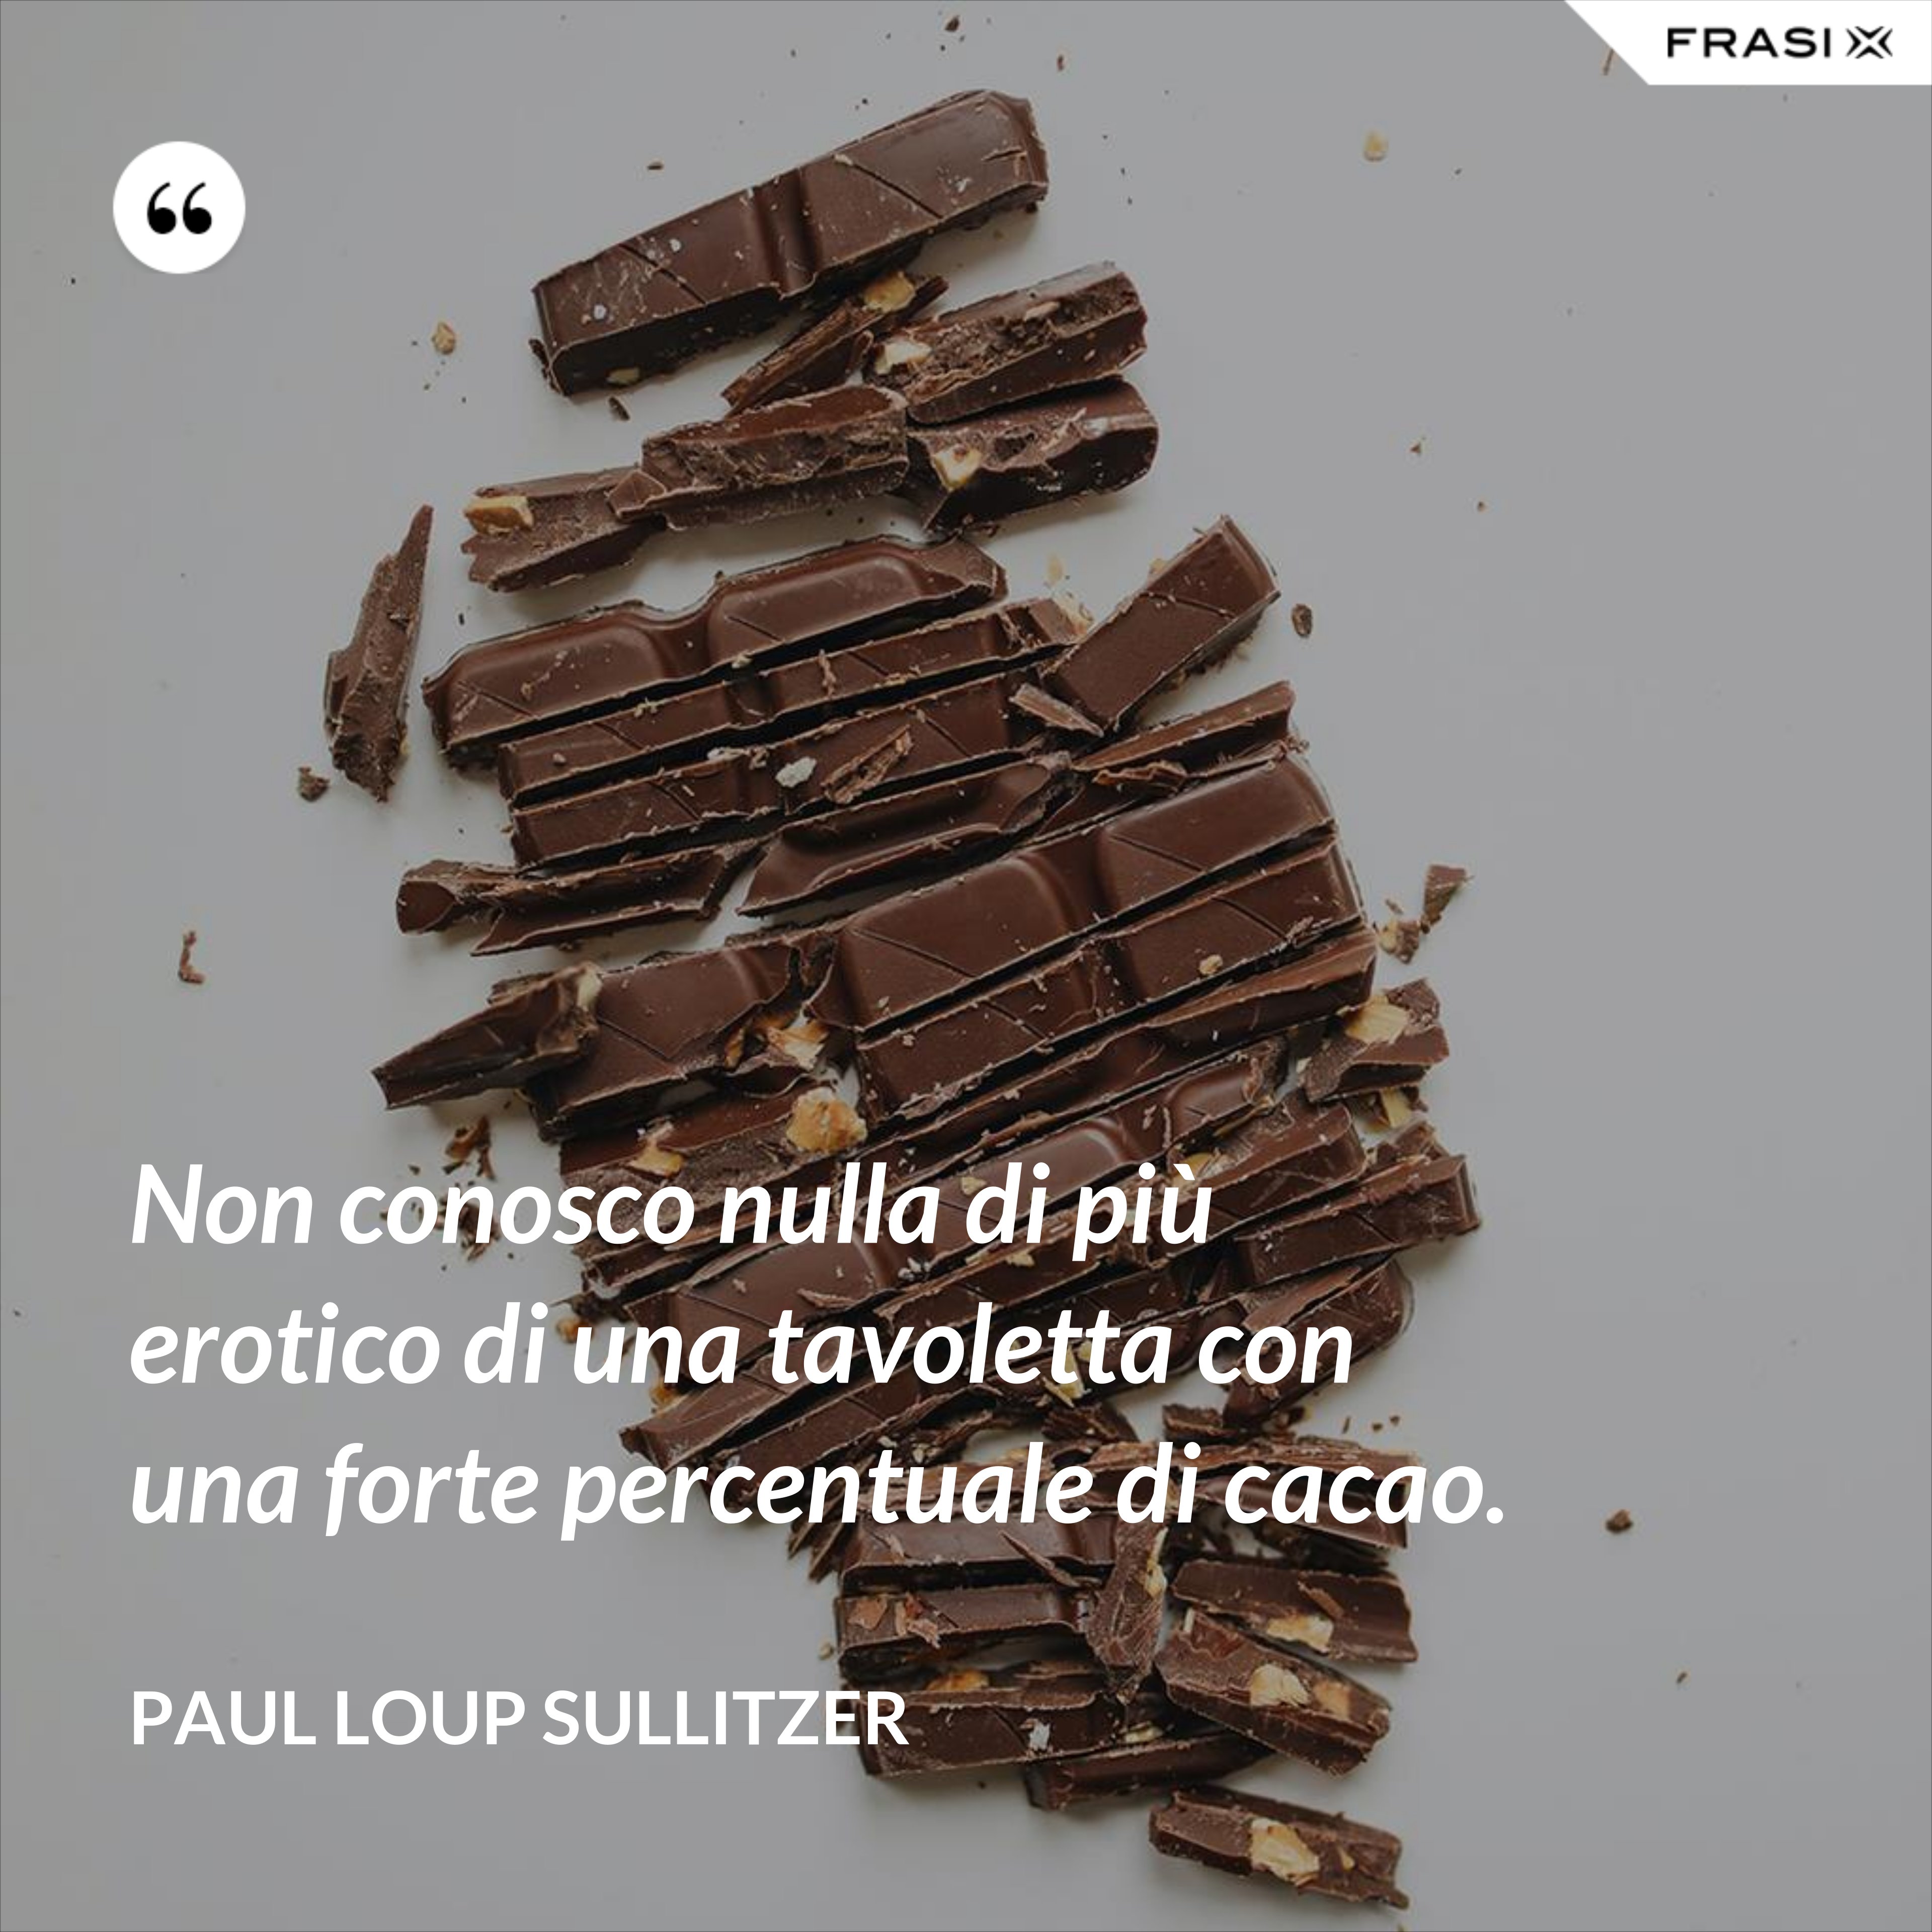 Non conosco nulla di più erotico di una tavoletta con una forte percentuale di cacao. - Paul Loup Sullitzer